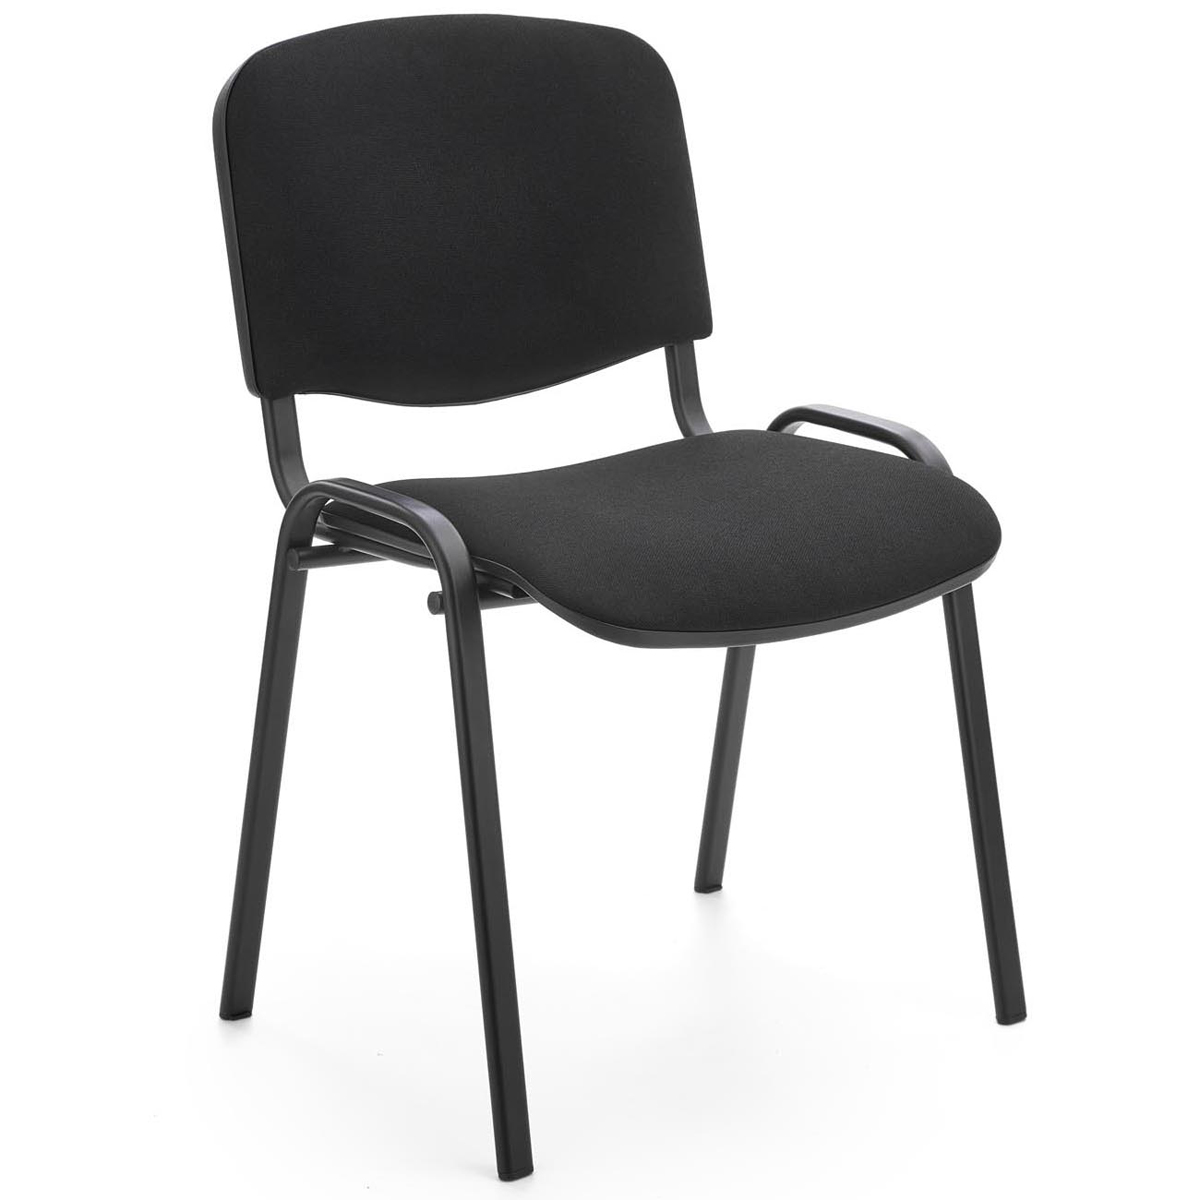 HALMAR Iso konferenčná stolička čierna